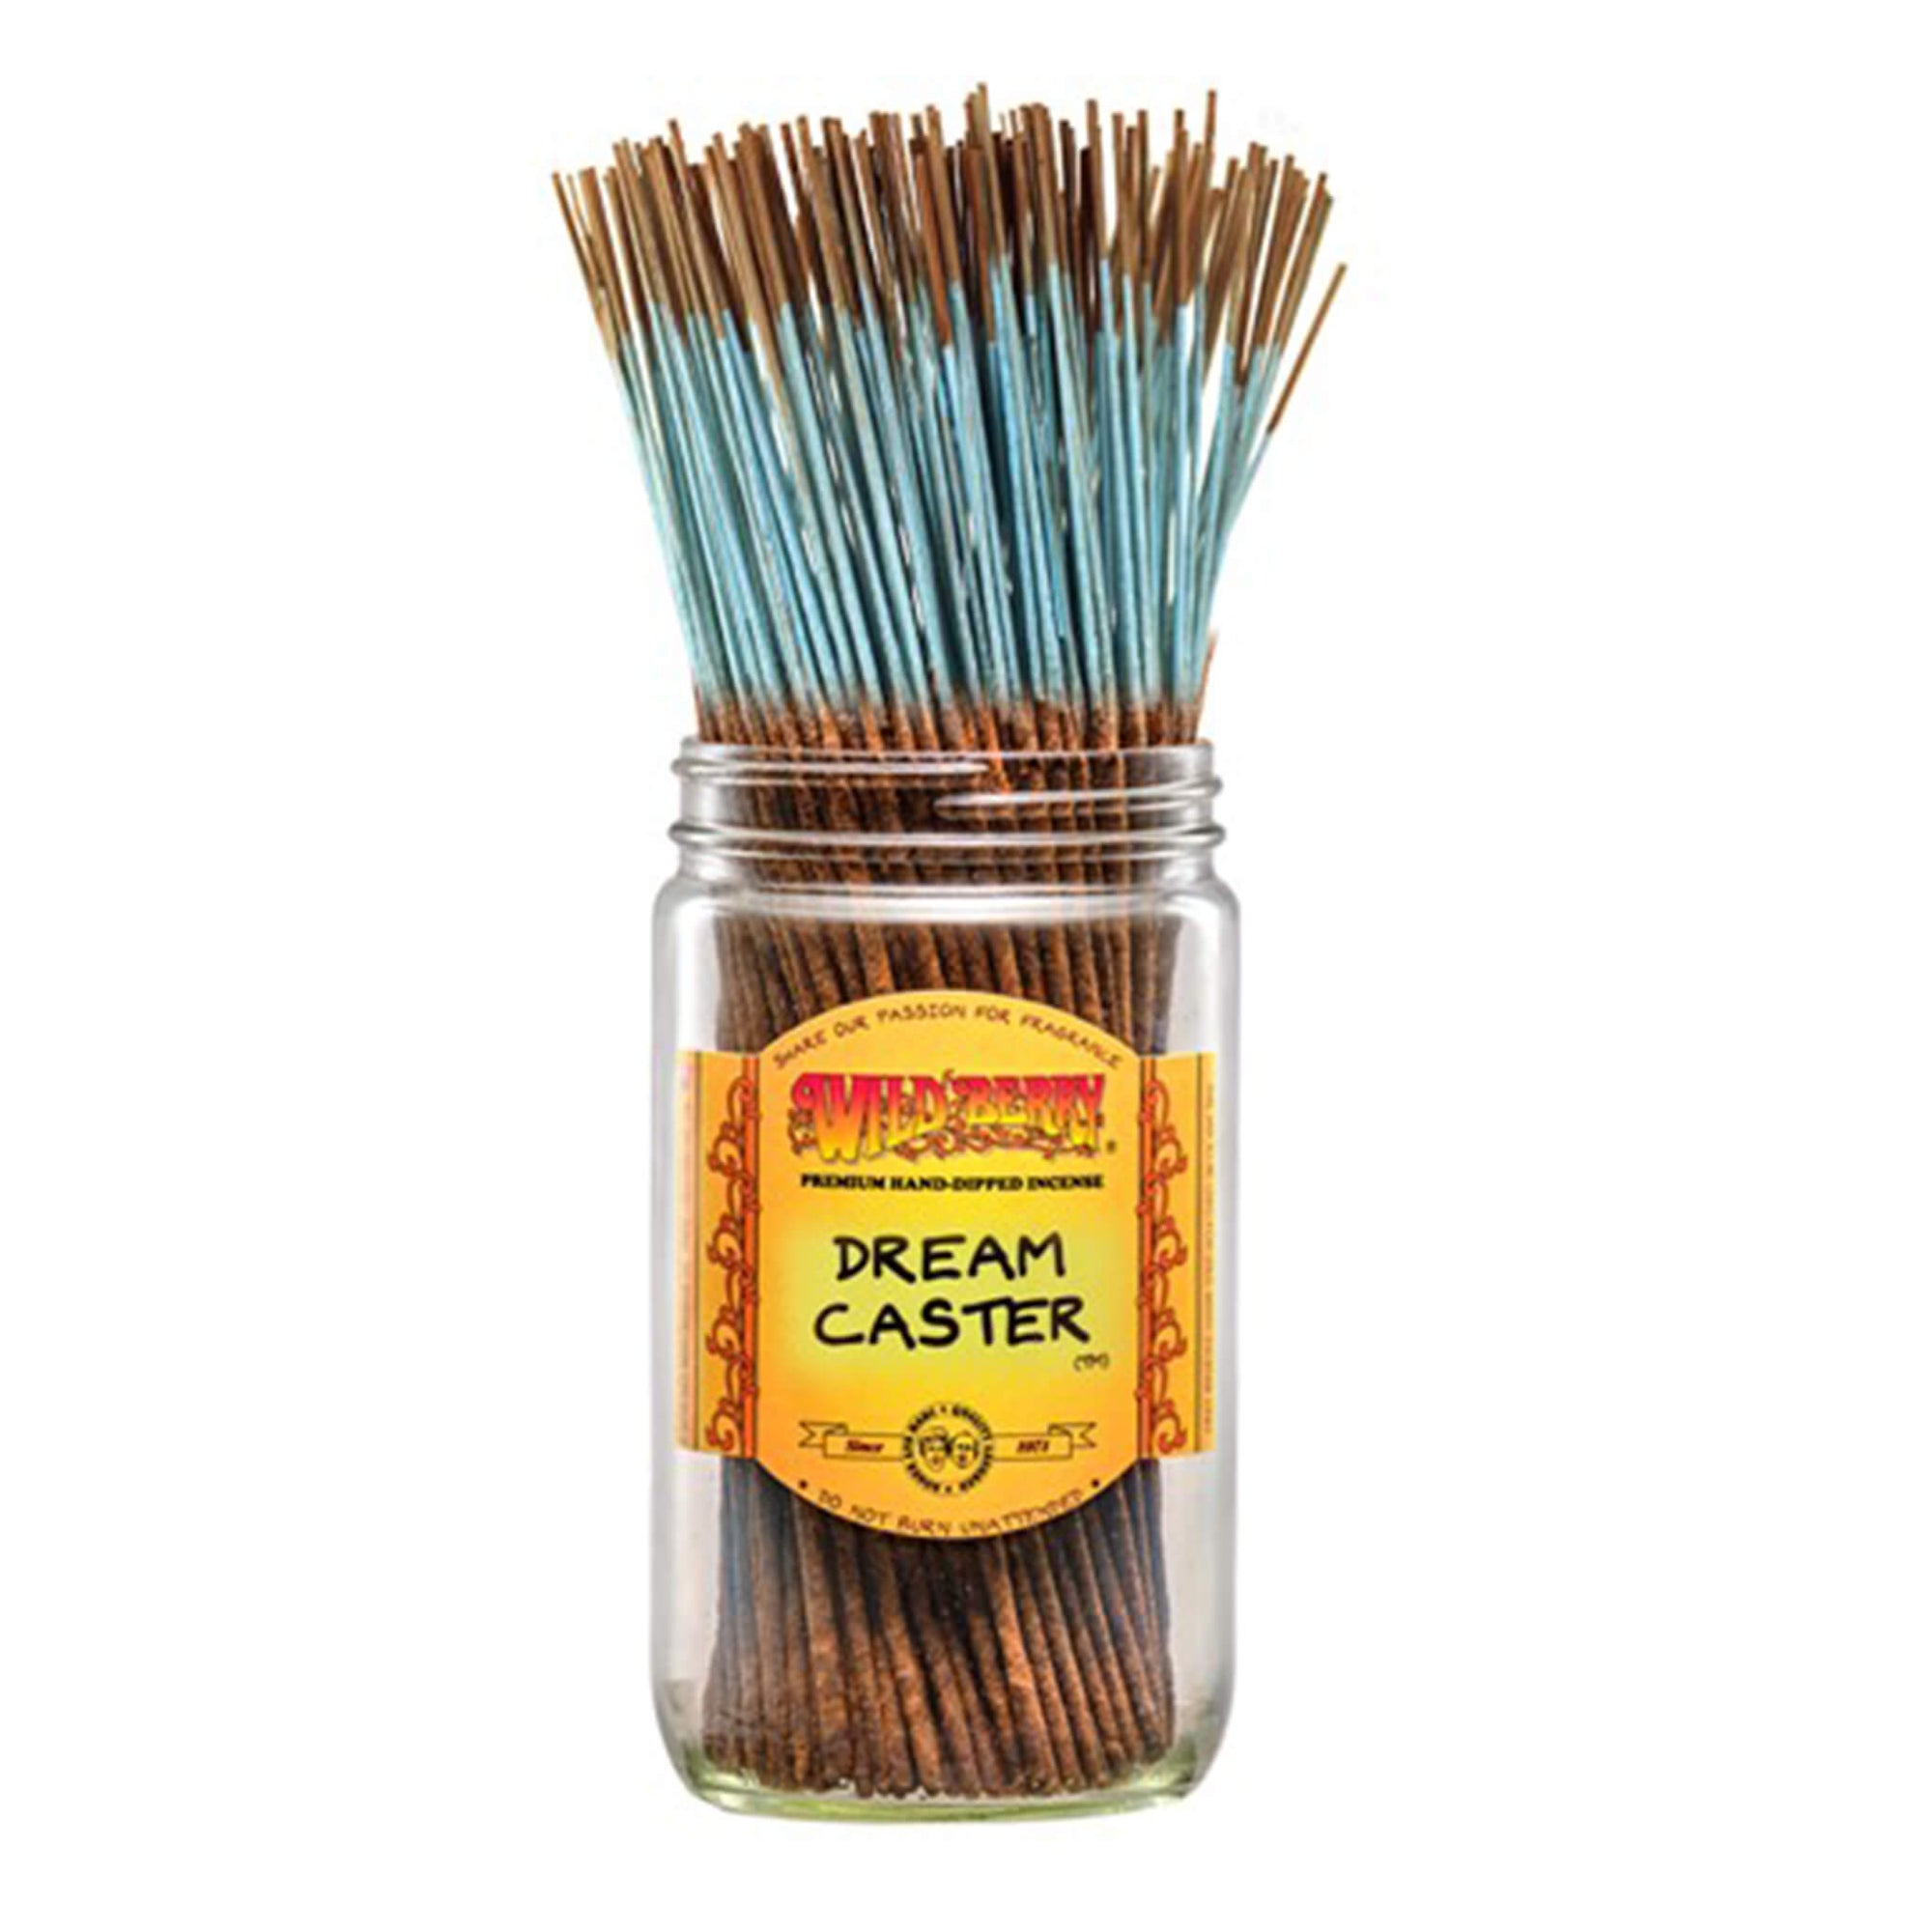 Dream Caster™ Incense Sticks